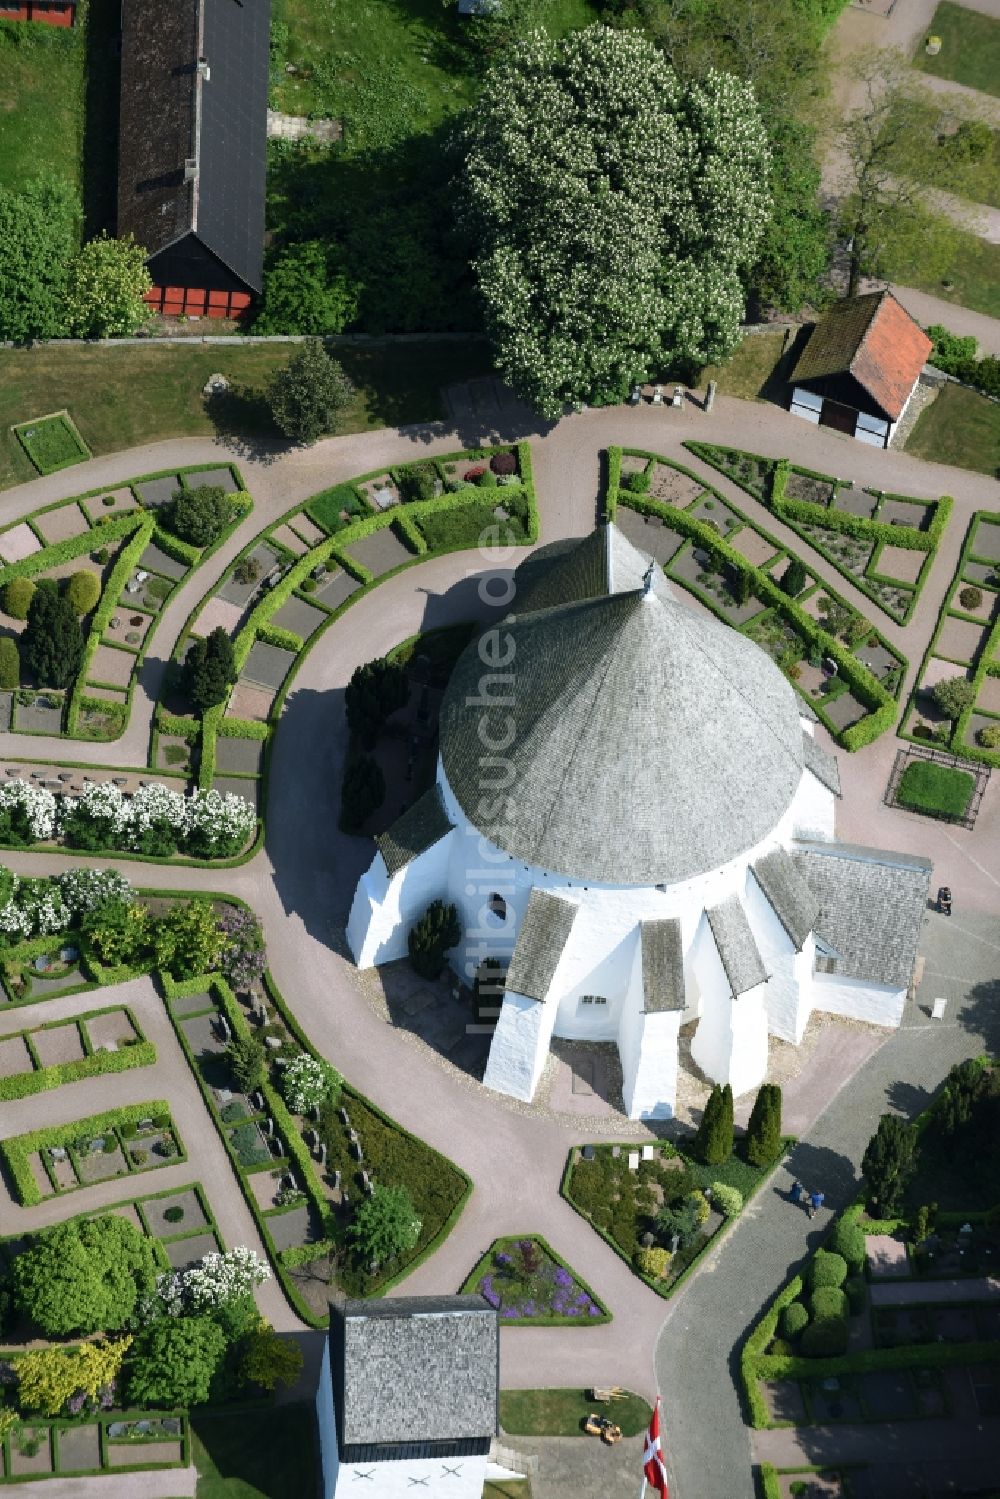 Luftbild Gudhjem - Kirchengebäude der Osterlars Rundkirke am Vietsvej in Gudhjem in Region Hovedstaden, Dänemark